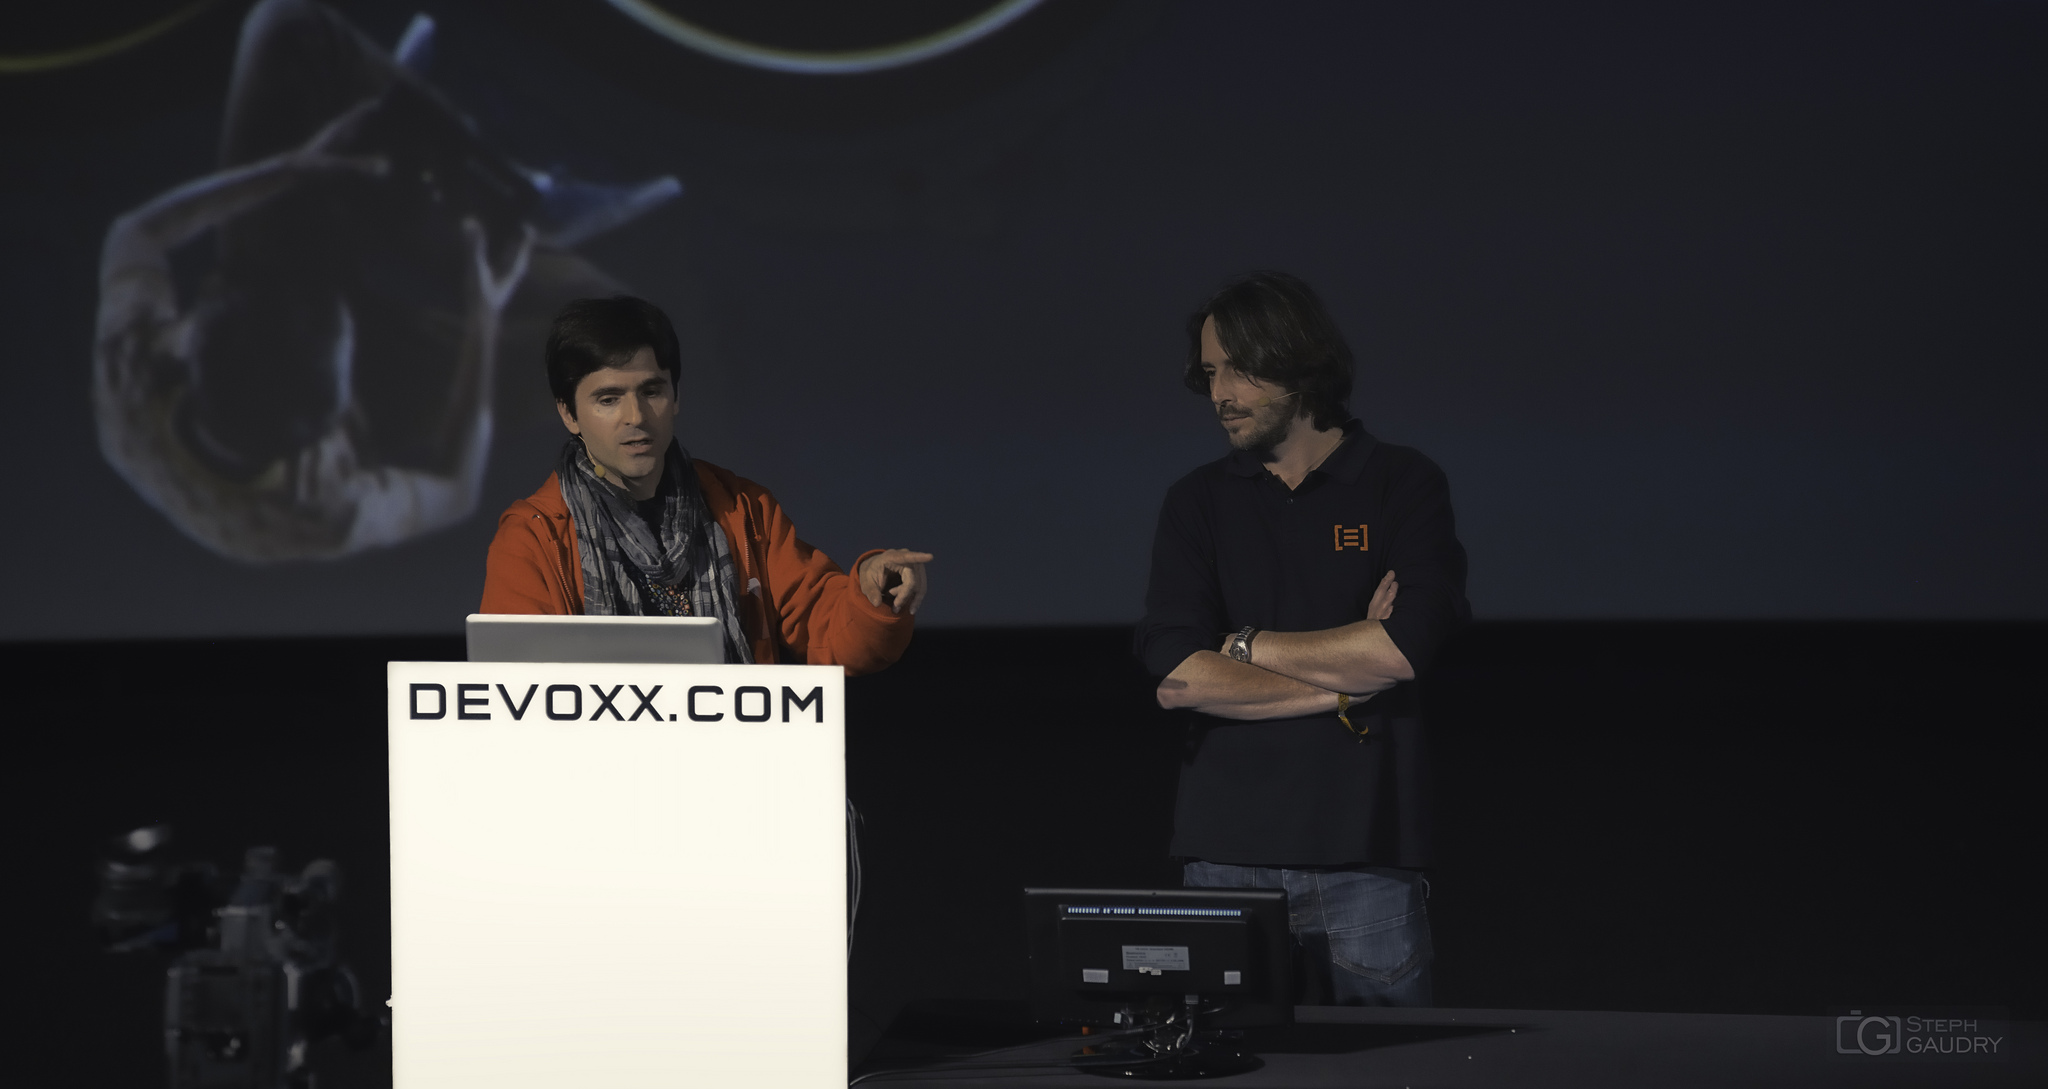 Devoxx 2014 - Martin Görner and Cyril Balit